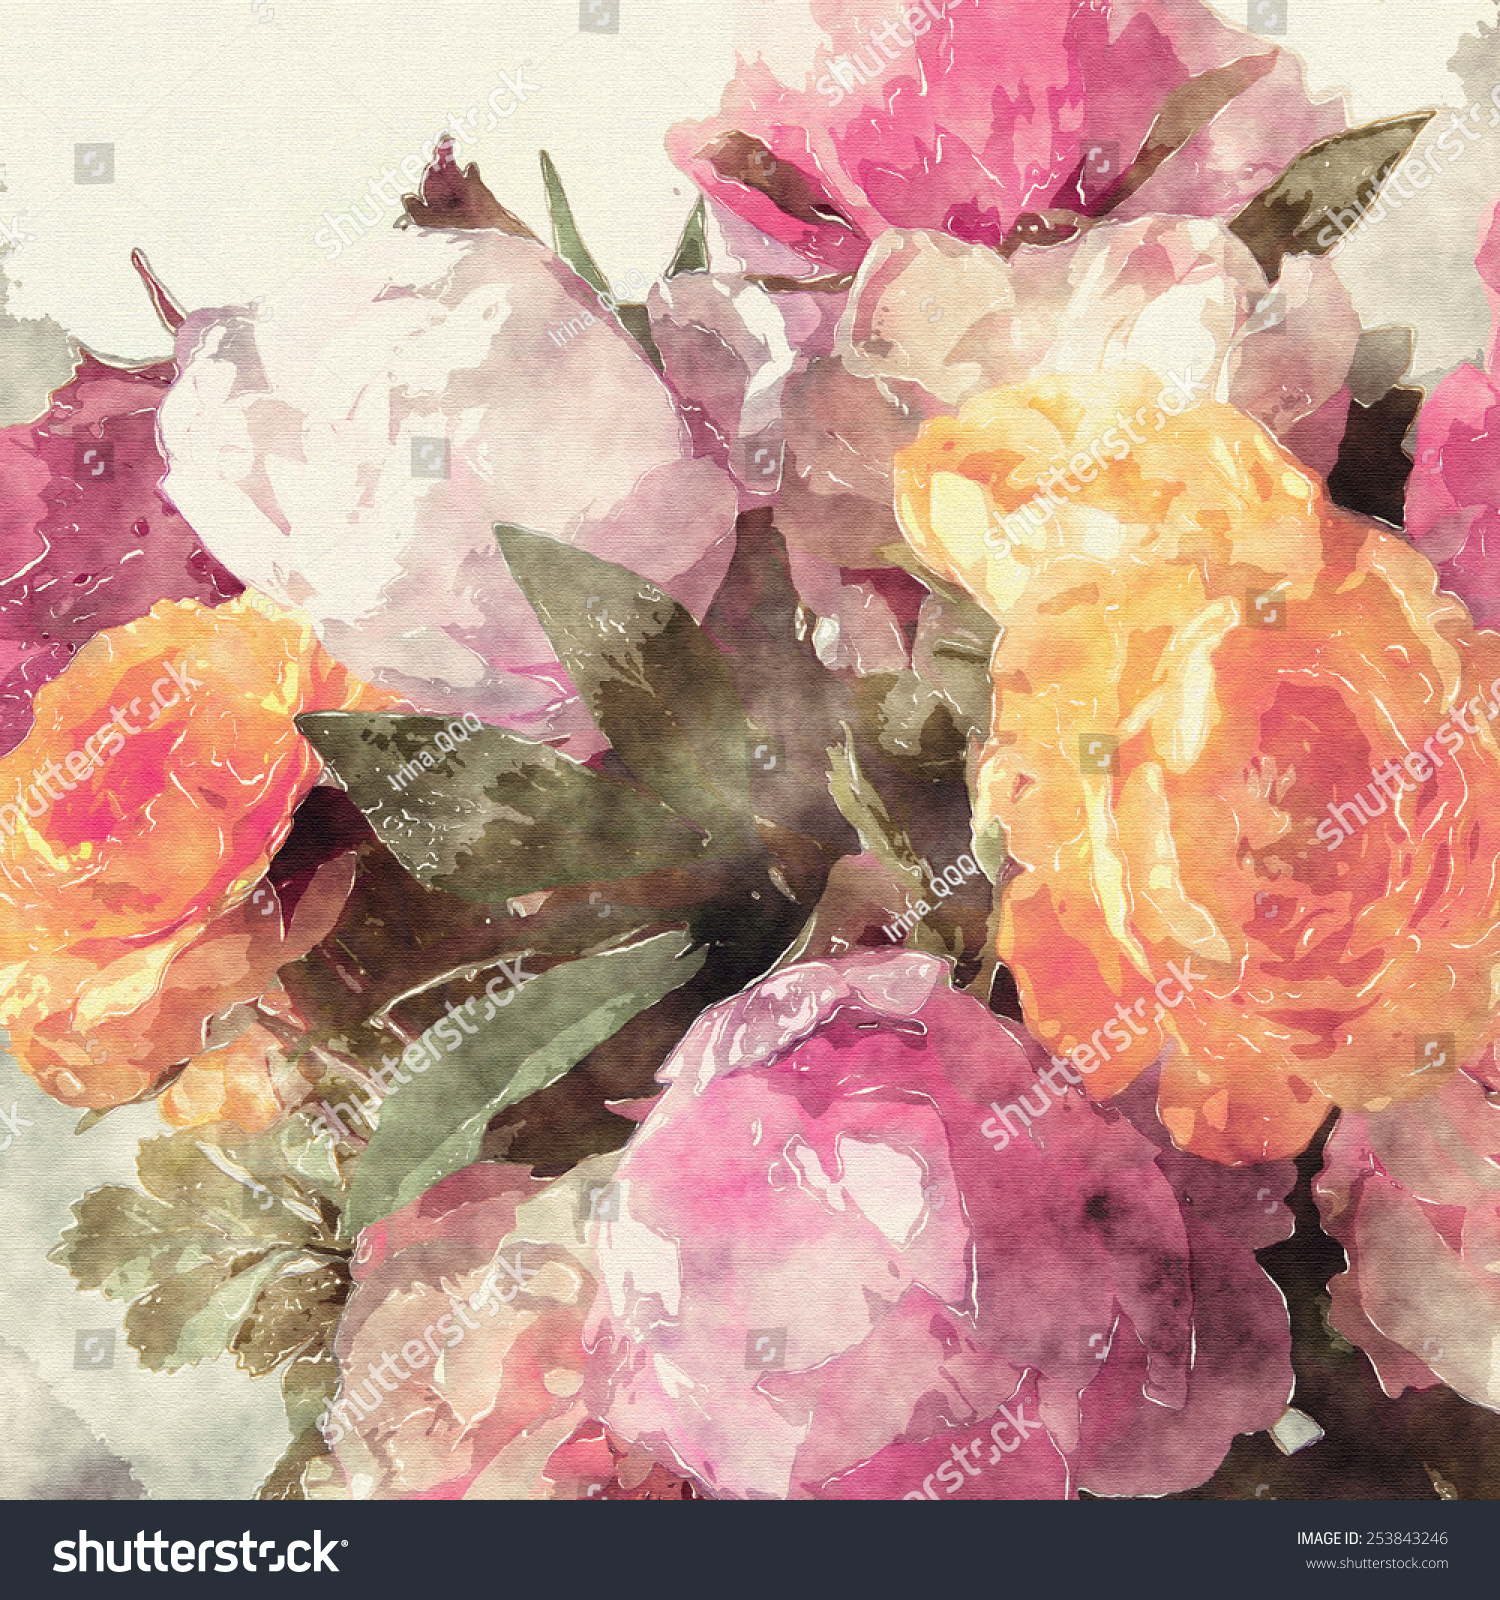 Art Grunge Floral Warm Sepia Vintage Stock Illustration 253843246 ...